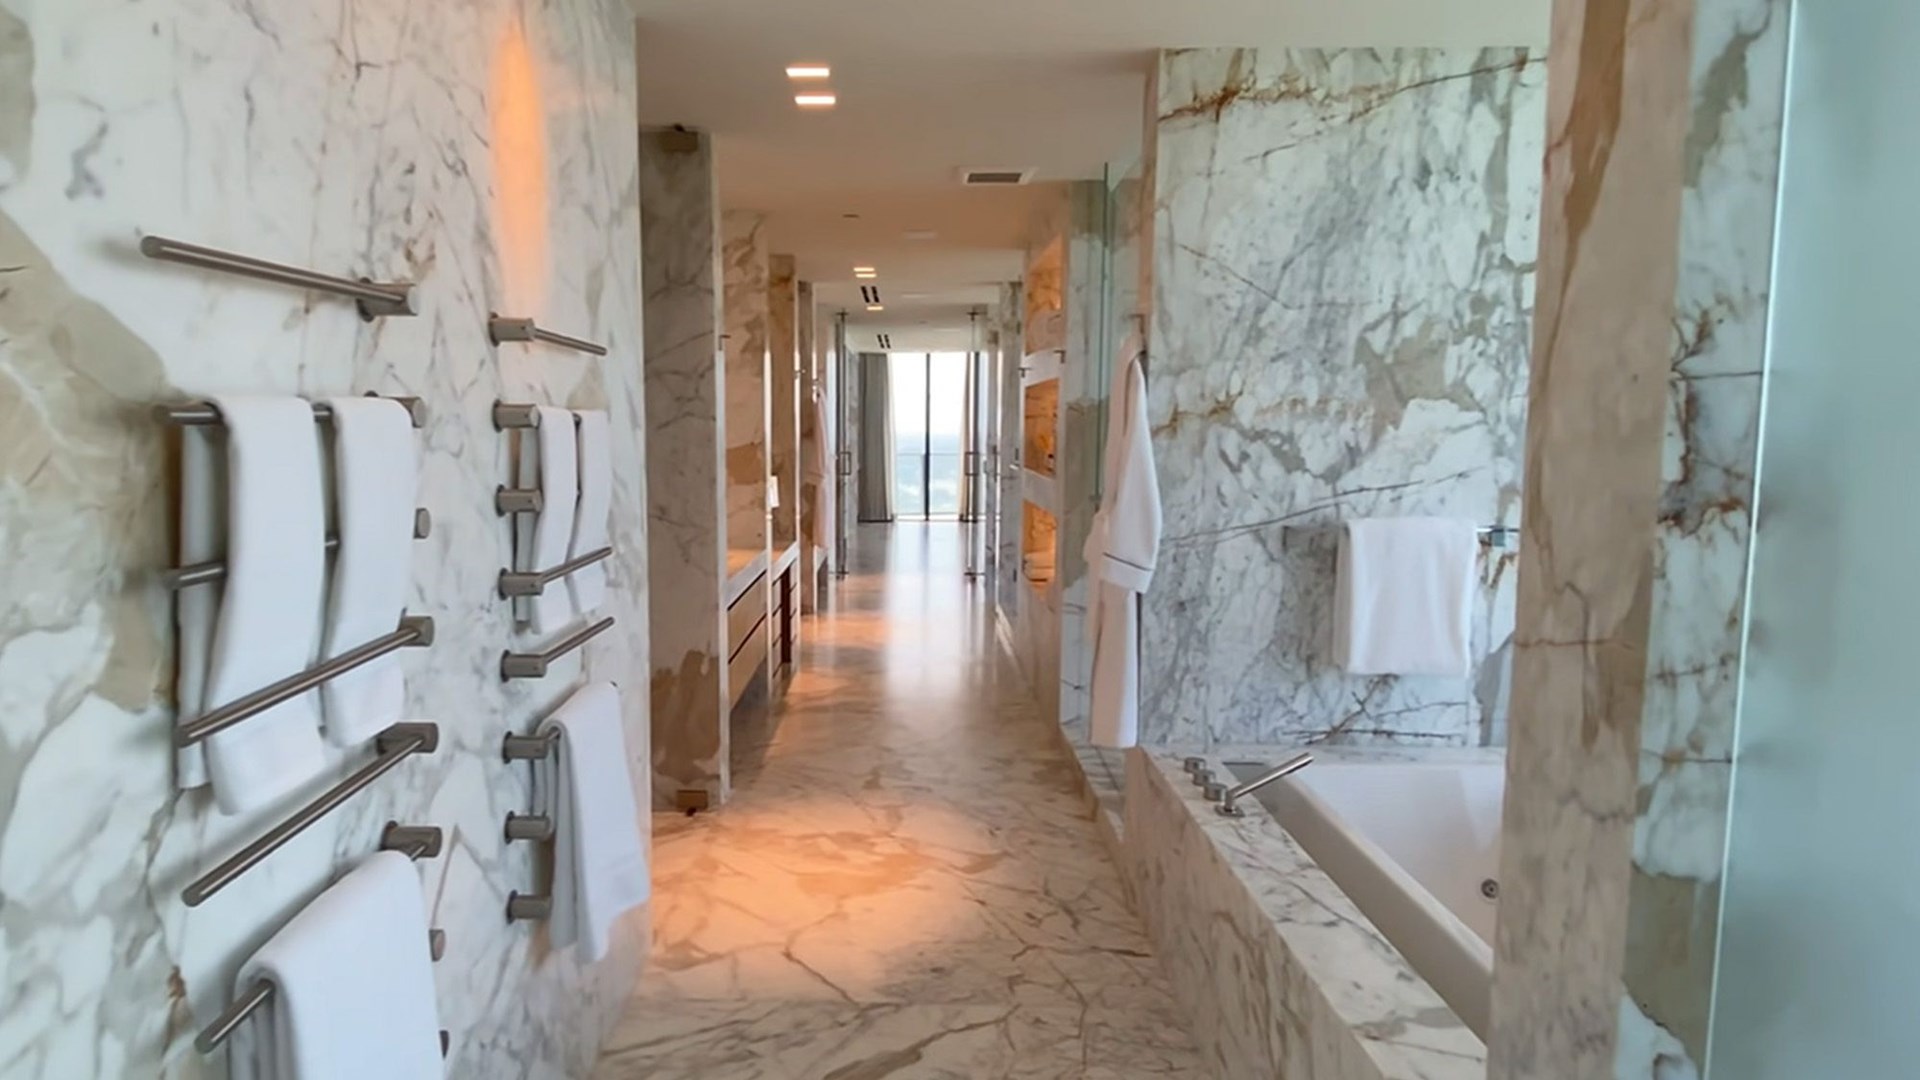 Αυτό το μπάνιο κοστίζει 1 εκατ. δολάρια – Η ξενάγηση που “κόβει” την ανάσα – ΒΙΝΤΕΟ